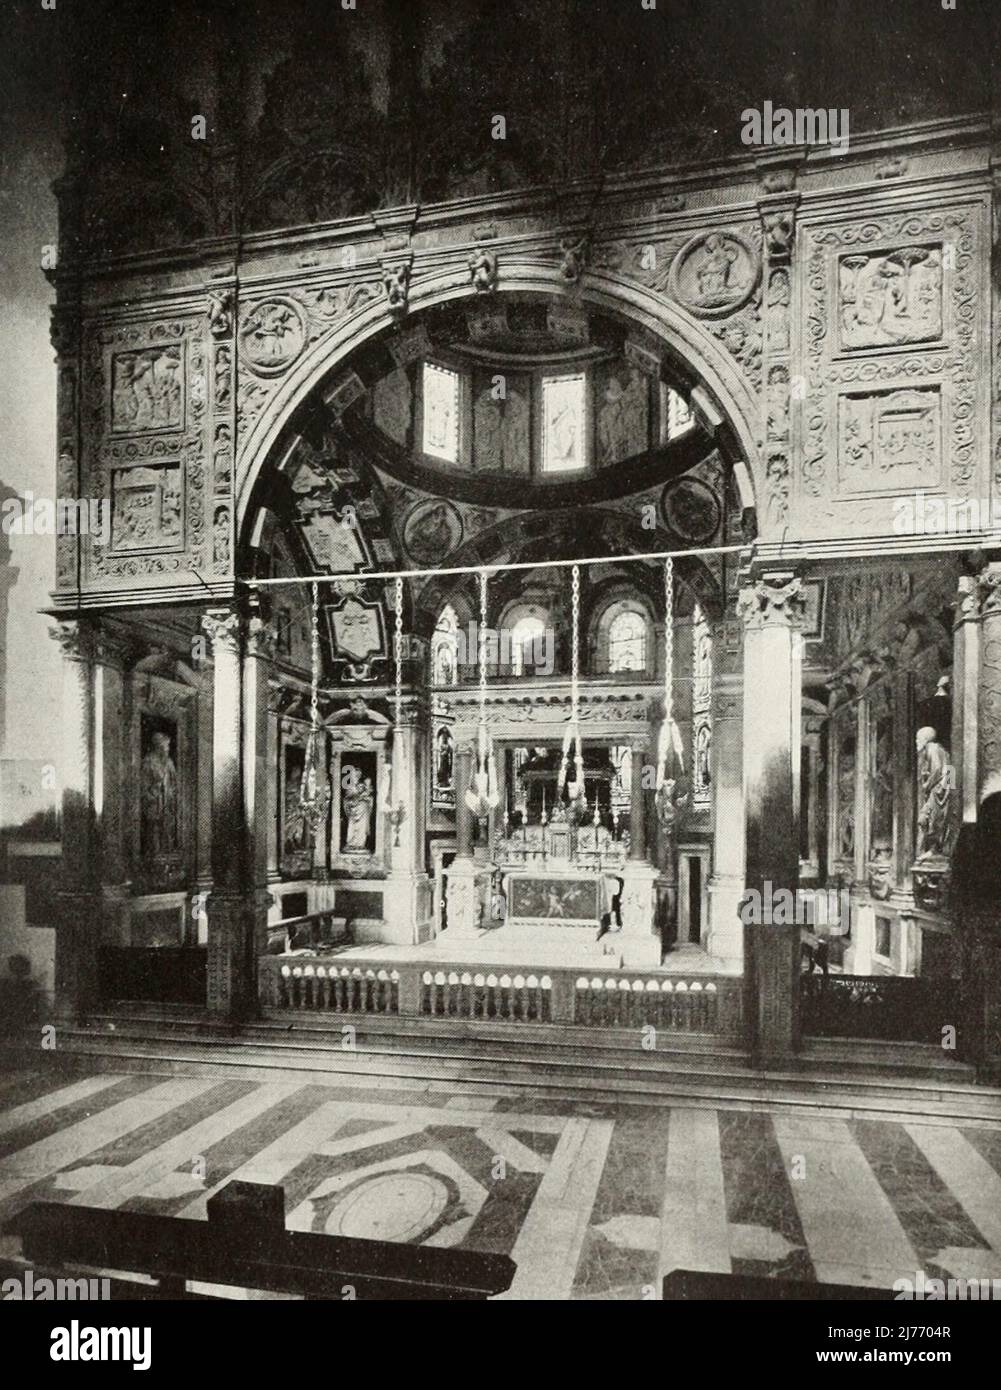 San Lorenzo, Chapelle Saint-Jean-Baptiste, Gênes, Italie, vers 1900 Banque D'Images